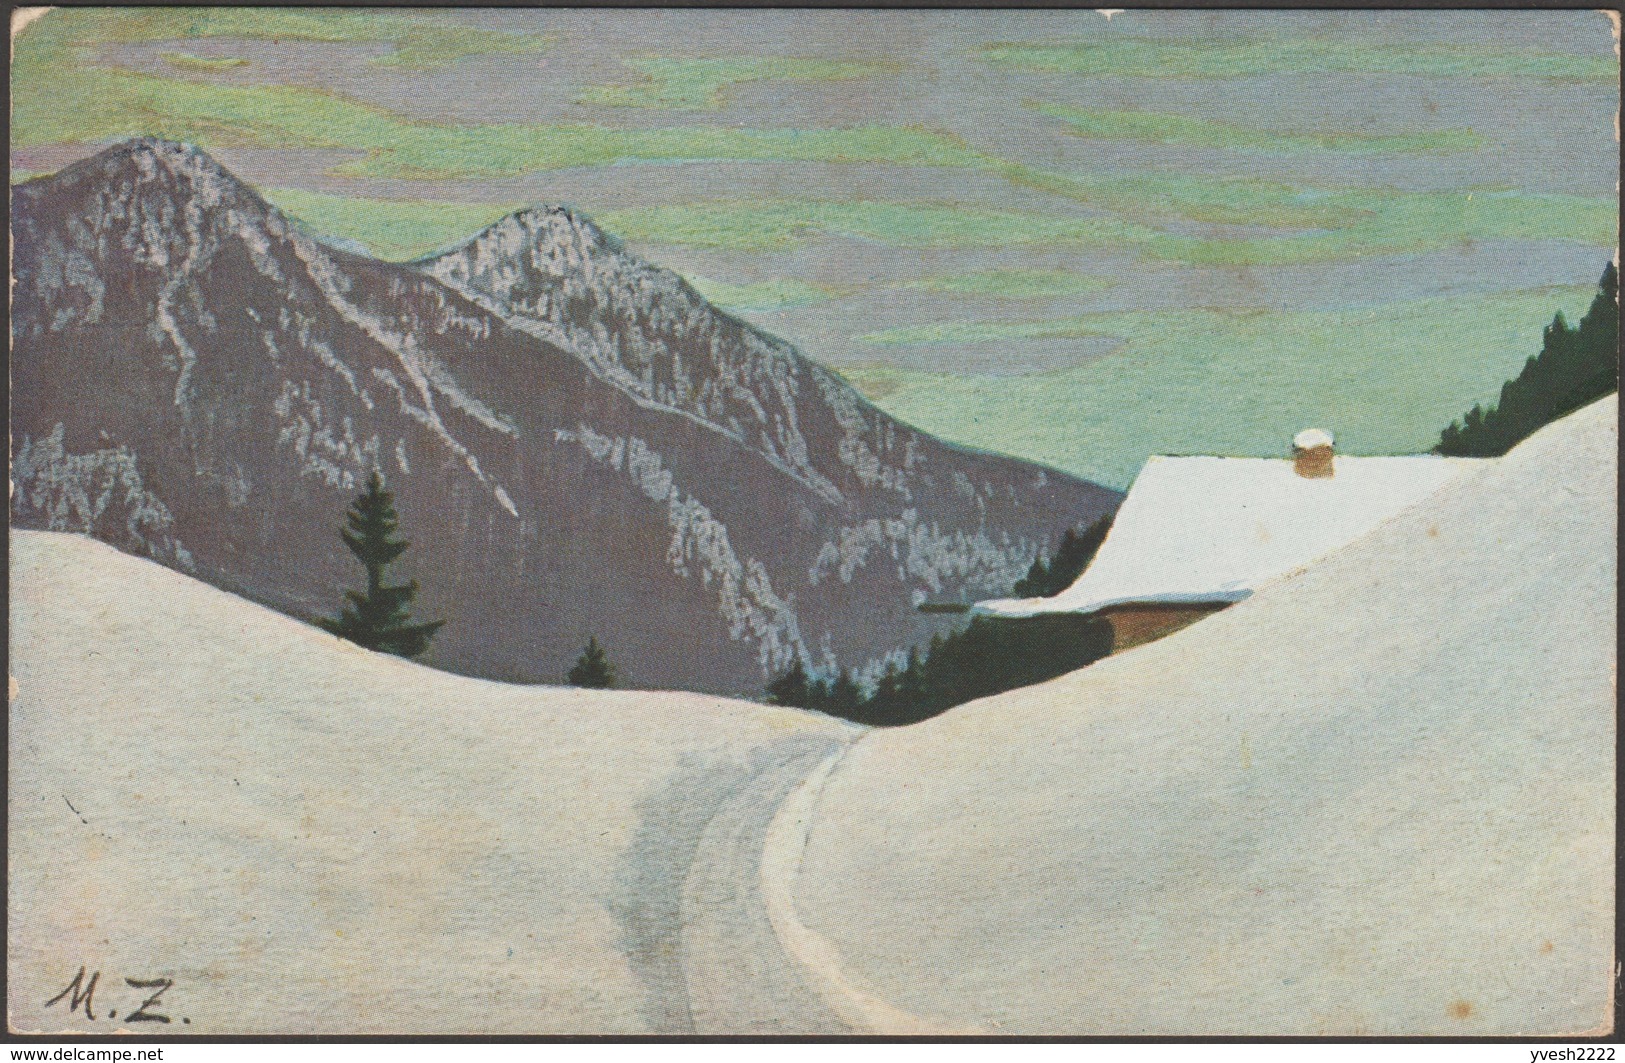 Bavière 1908. Entier Postal Timbré Sur Commande. Refuge De Montagne Recouvert De Neige, Paysage Alpestre. Peinture - Berge